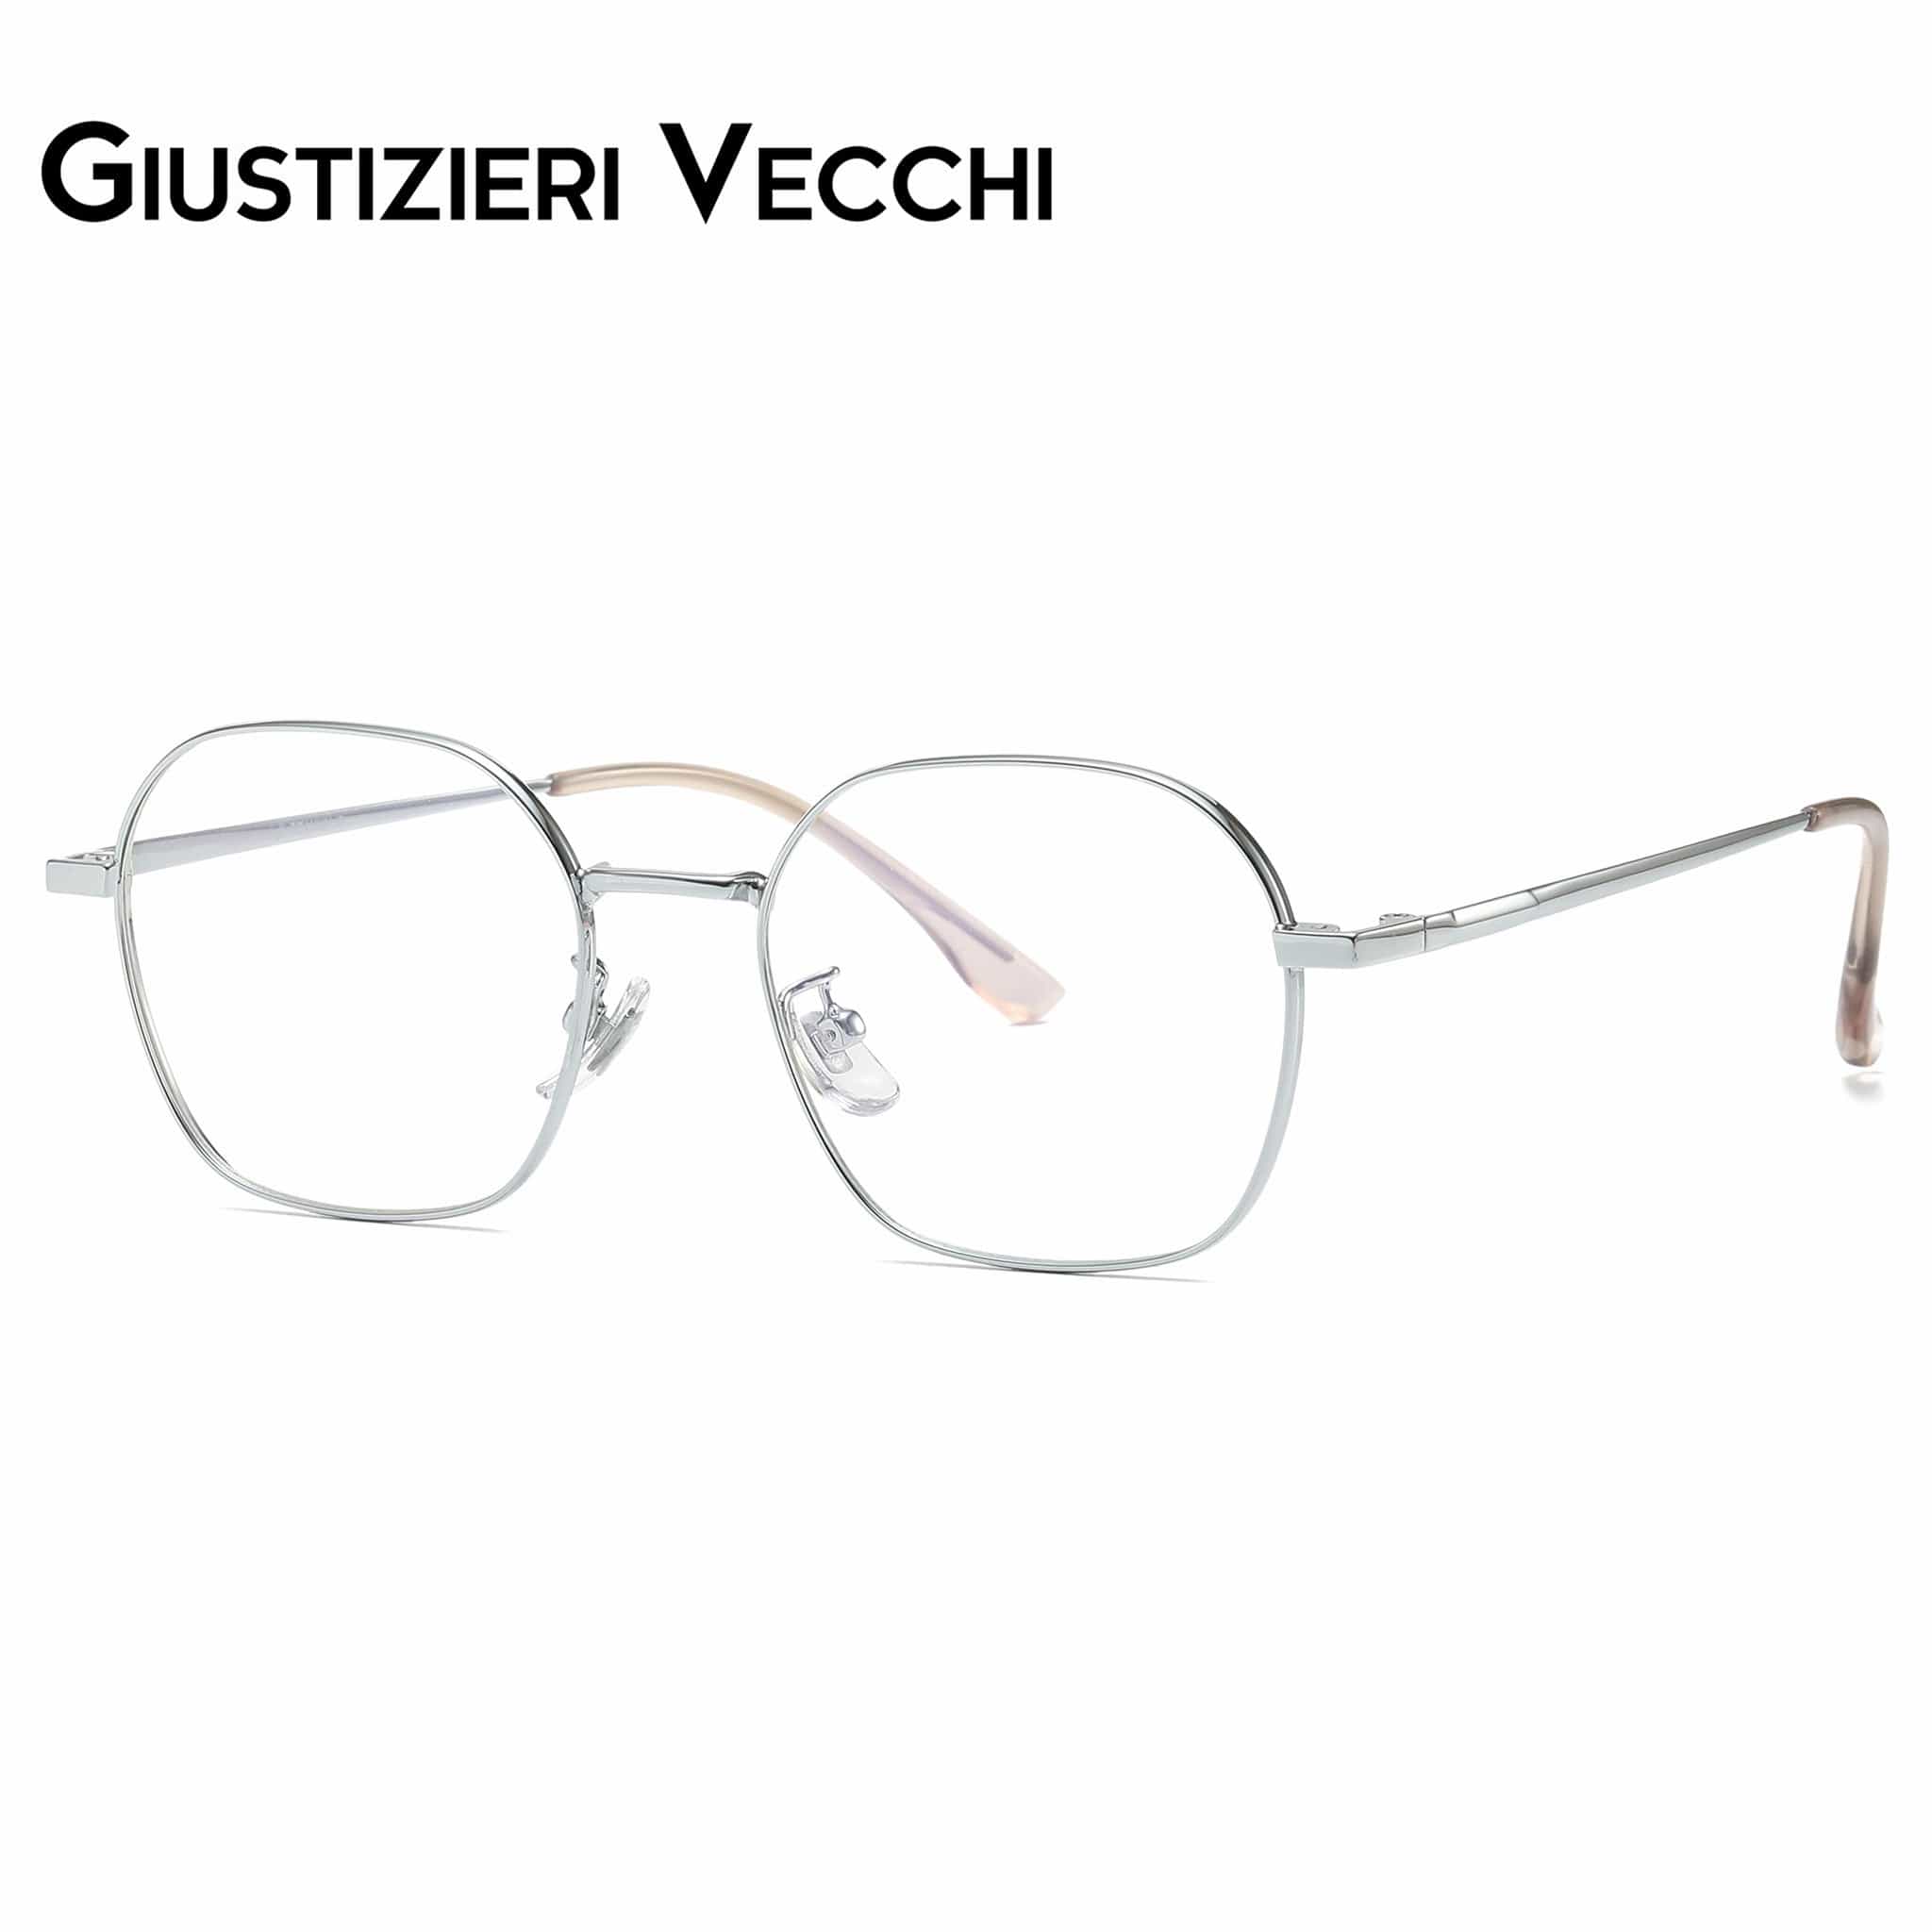 GIUSTIZIERI VECCHI Eyeglasses Small / Silver Mystic Mist Tre